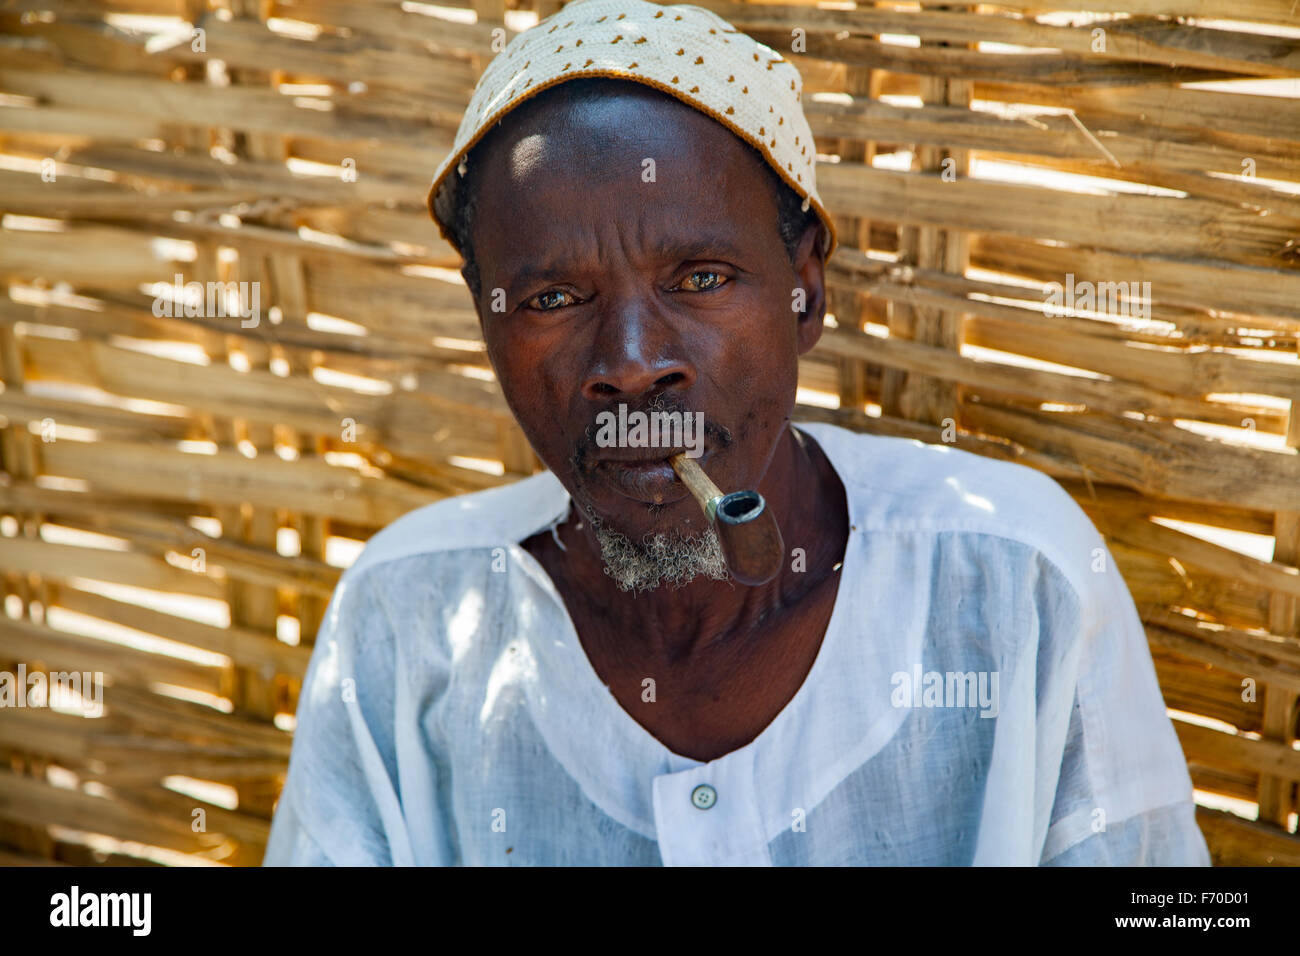 Gabu, Guinea-Bissau - 13 aprile 2014: Ritratto di un capo di villaggio africano che guida una riunione del consiglio nella Guinea-Bissau rurale Foto Stock